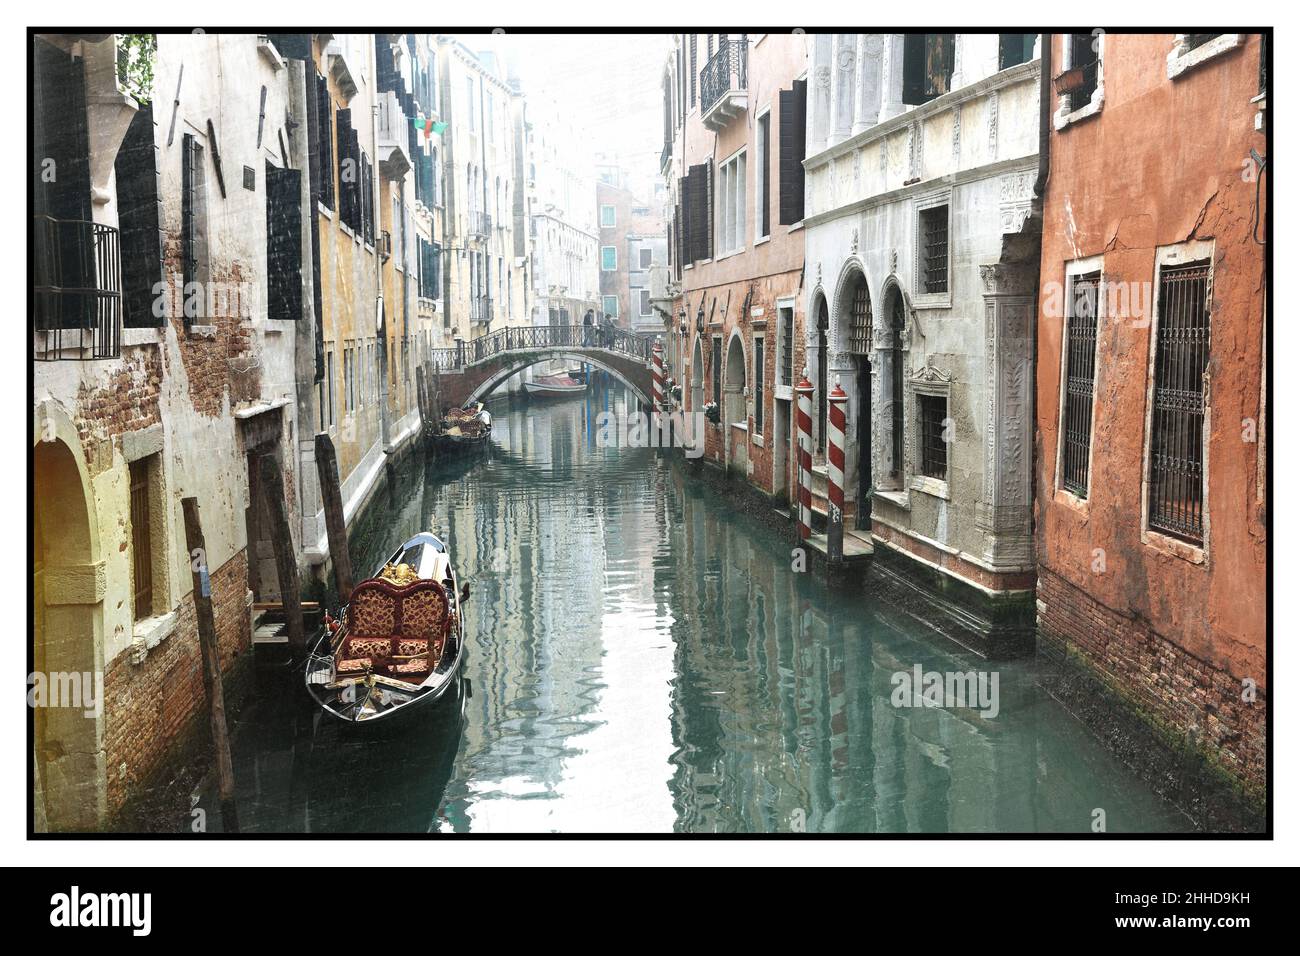 Romantique canaux vénitiens.Vieilles rues étroites de Venise.Photo rétro aux tons sépia.Italie Banque D'Images